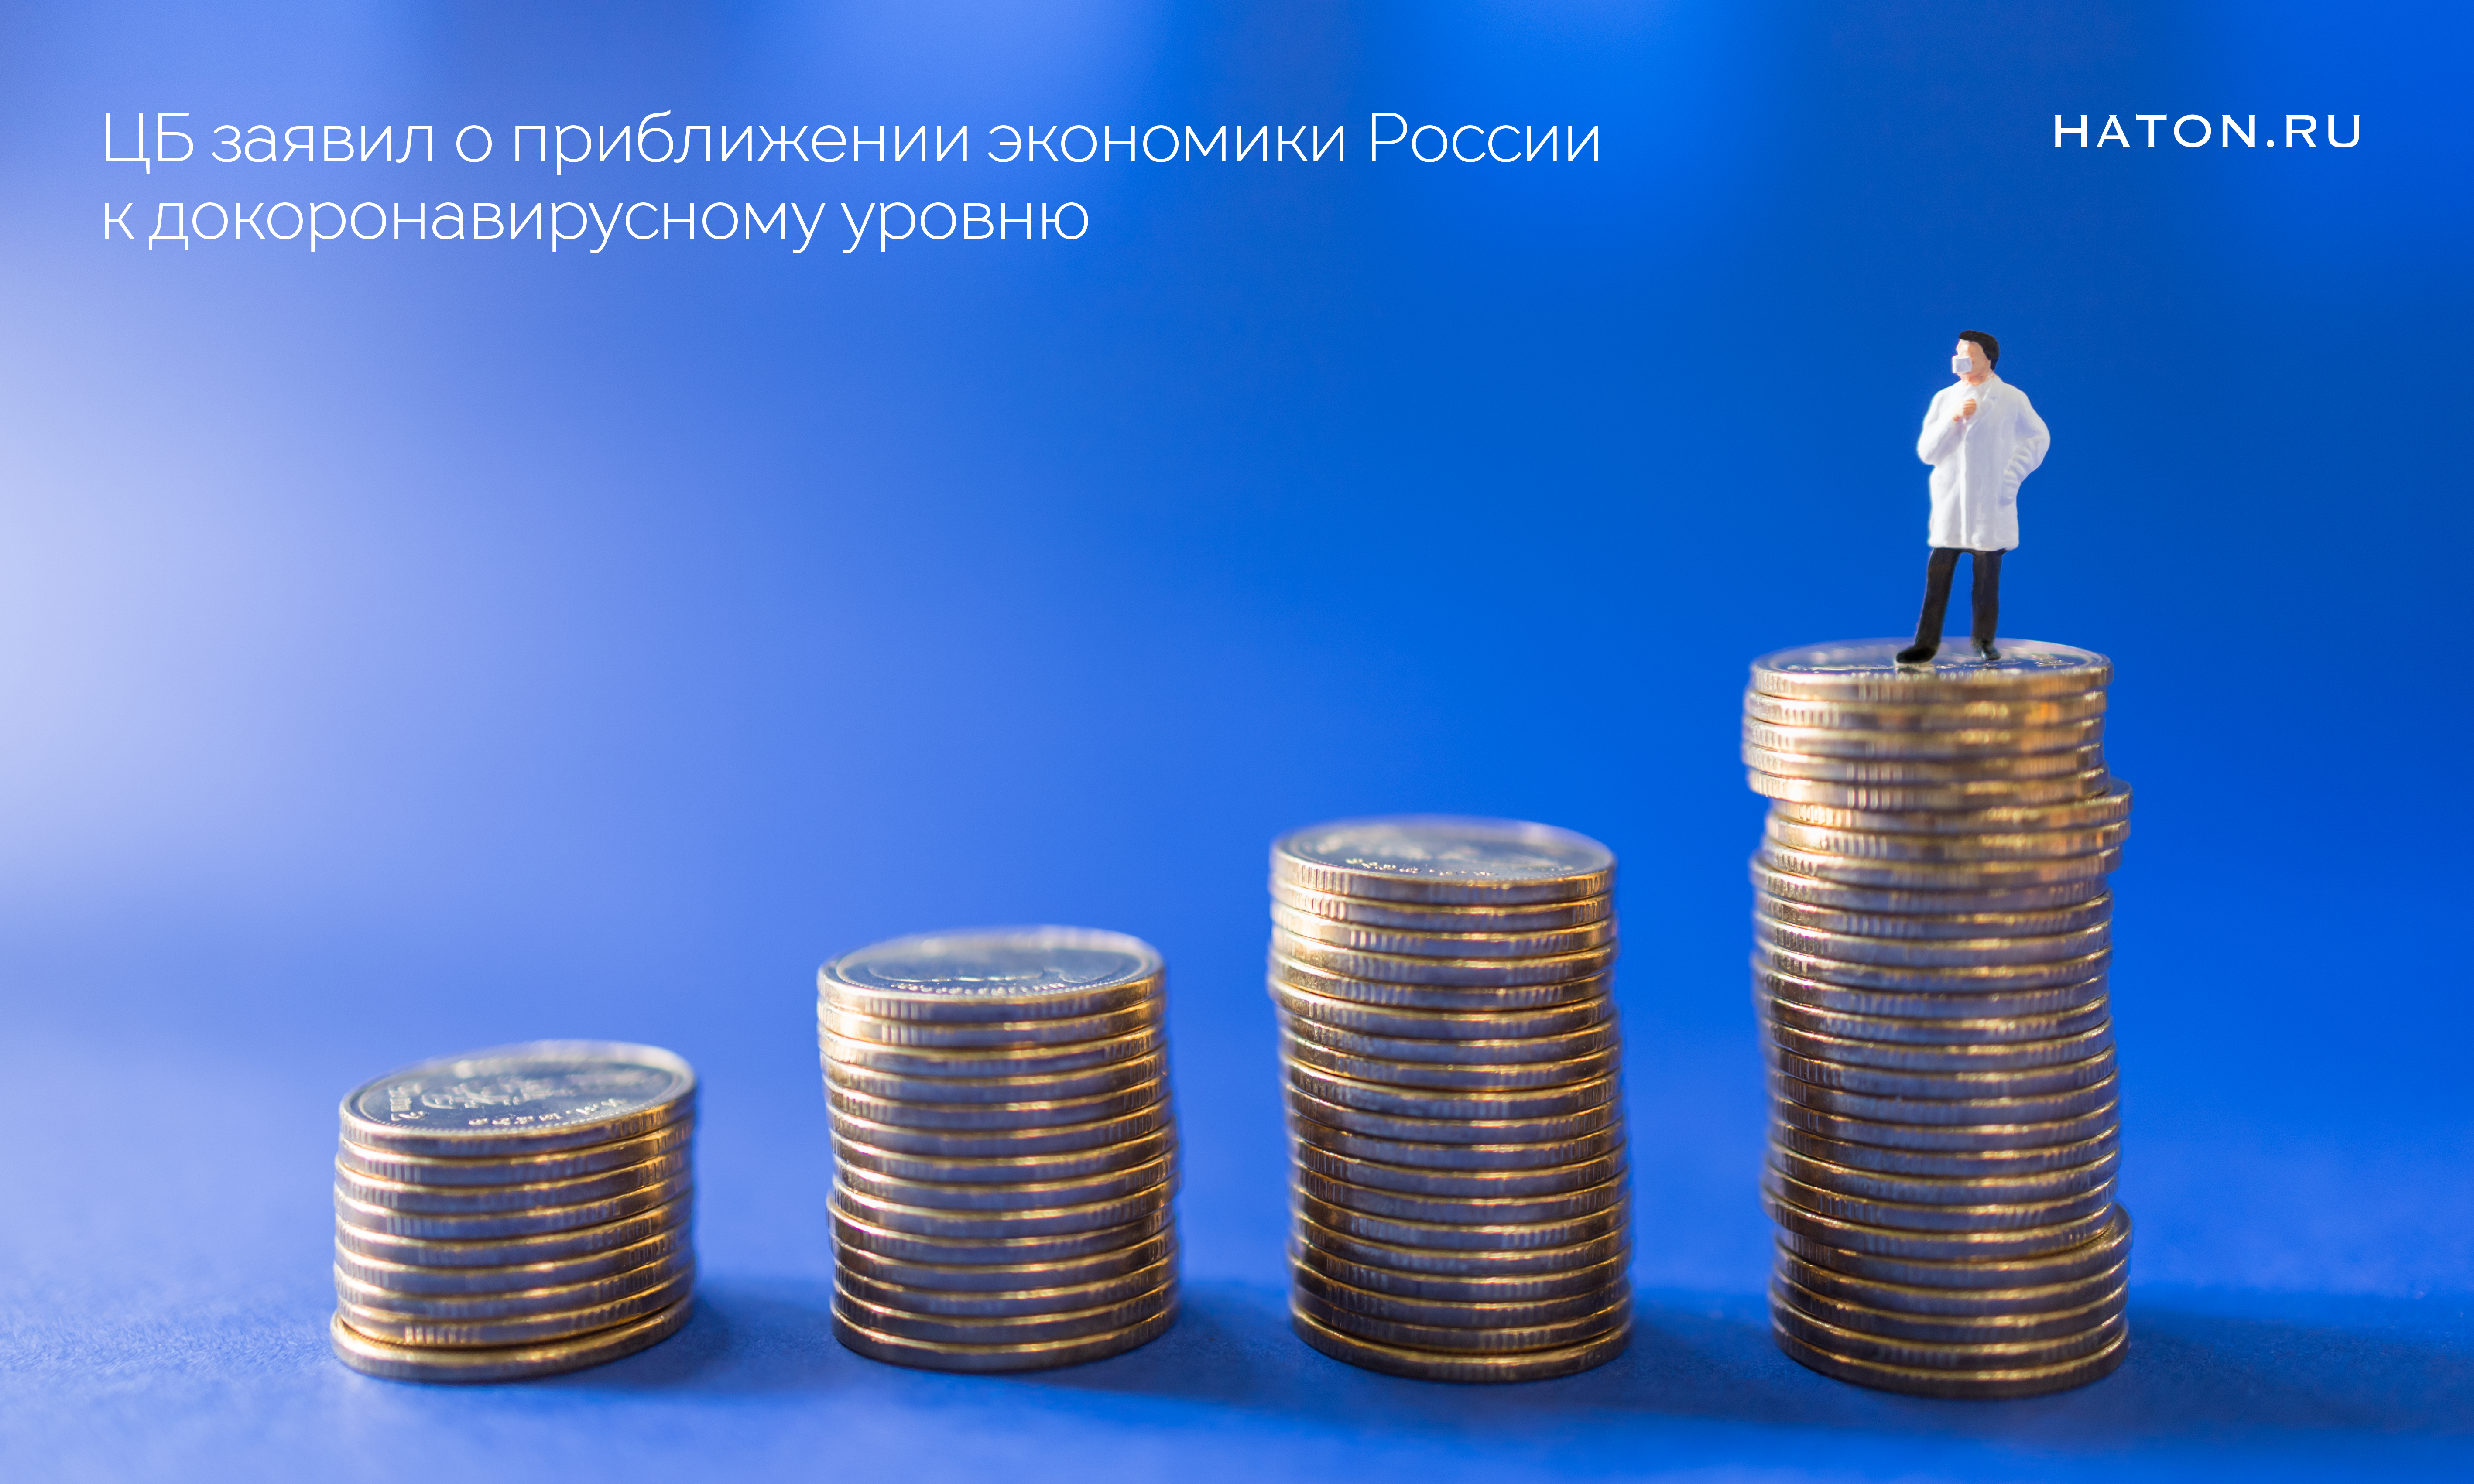 ЦБ заявил о приближении экономики России к докоронавирусному уровню